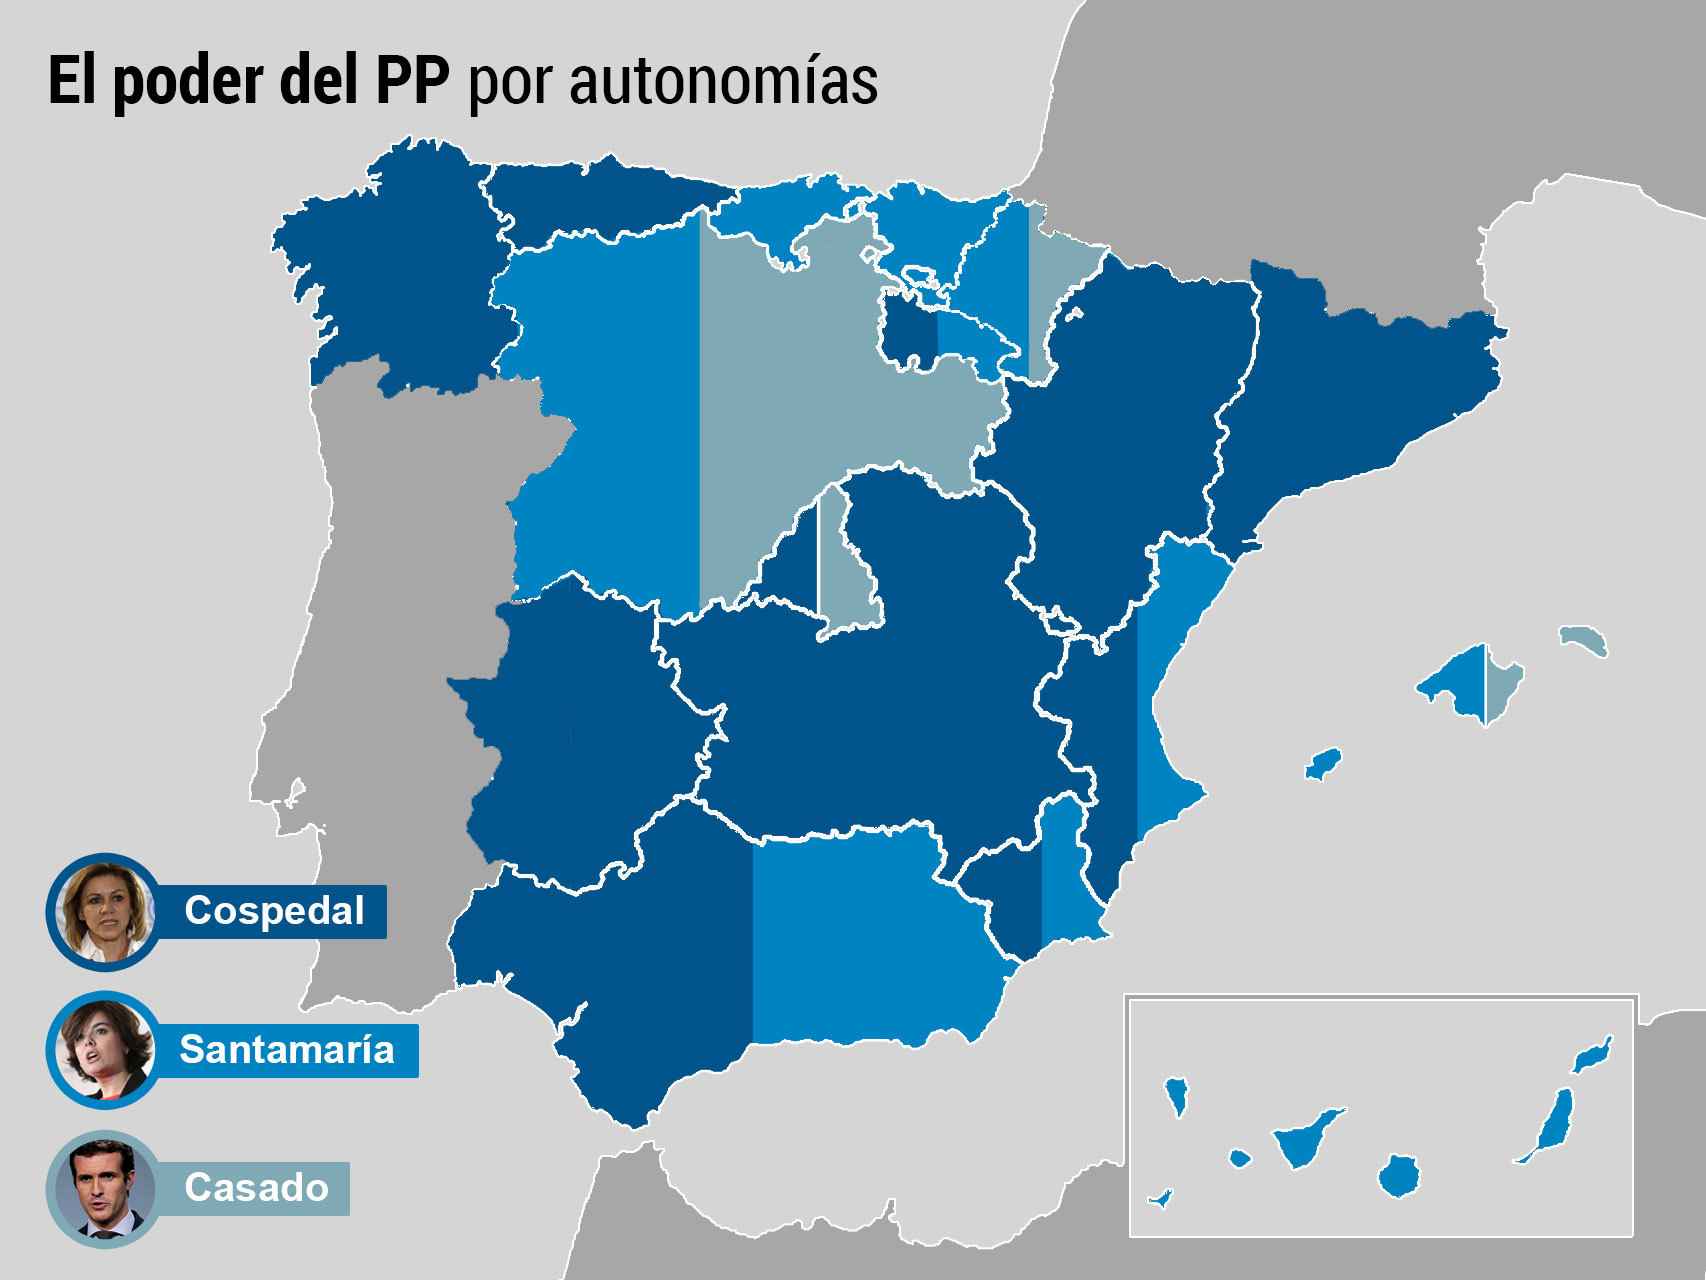 El reparto del poder del PP por autonomías.